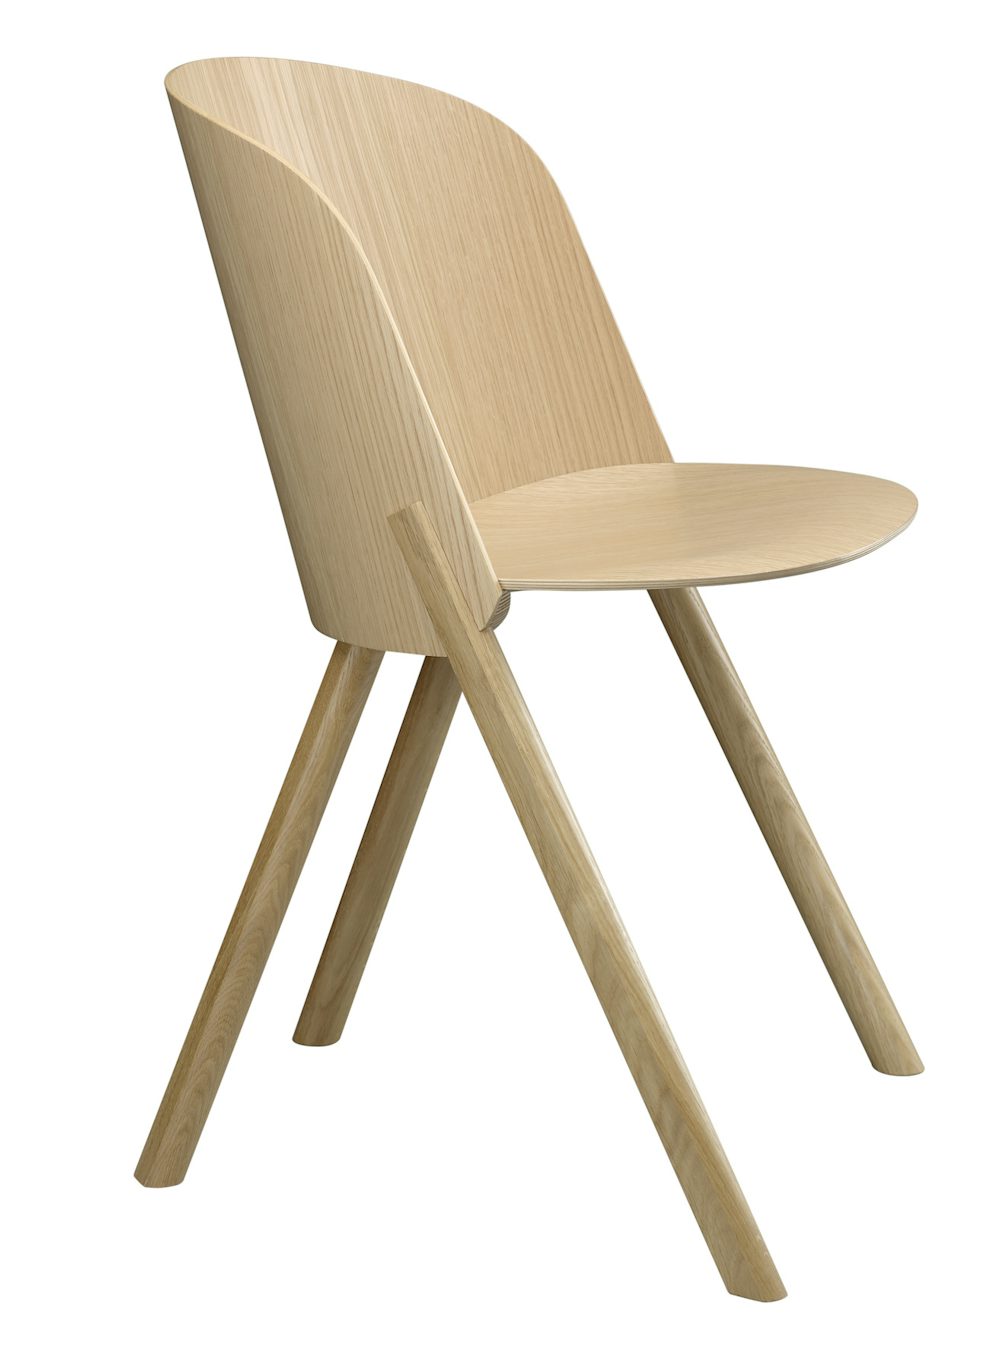 e15 this side chair in oak veneer